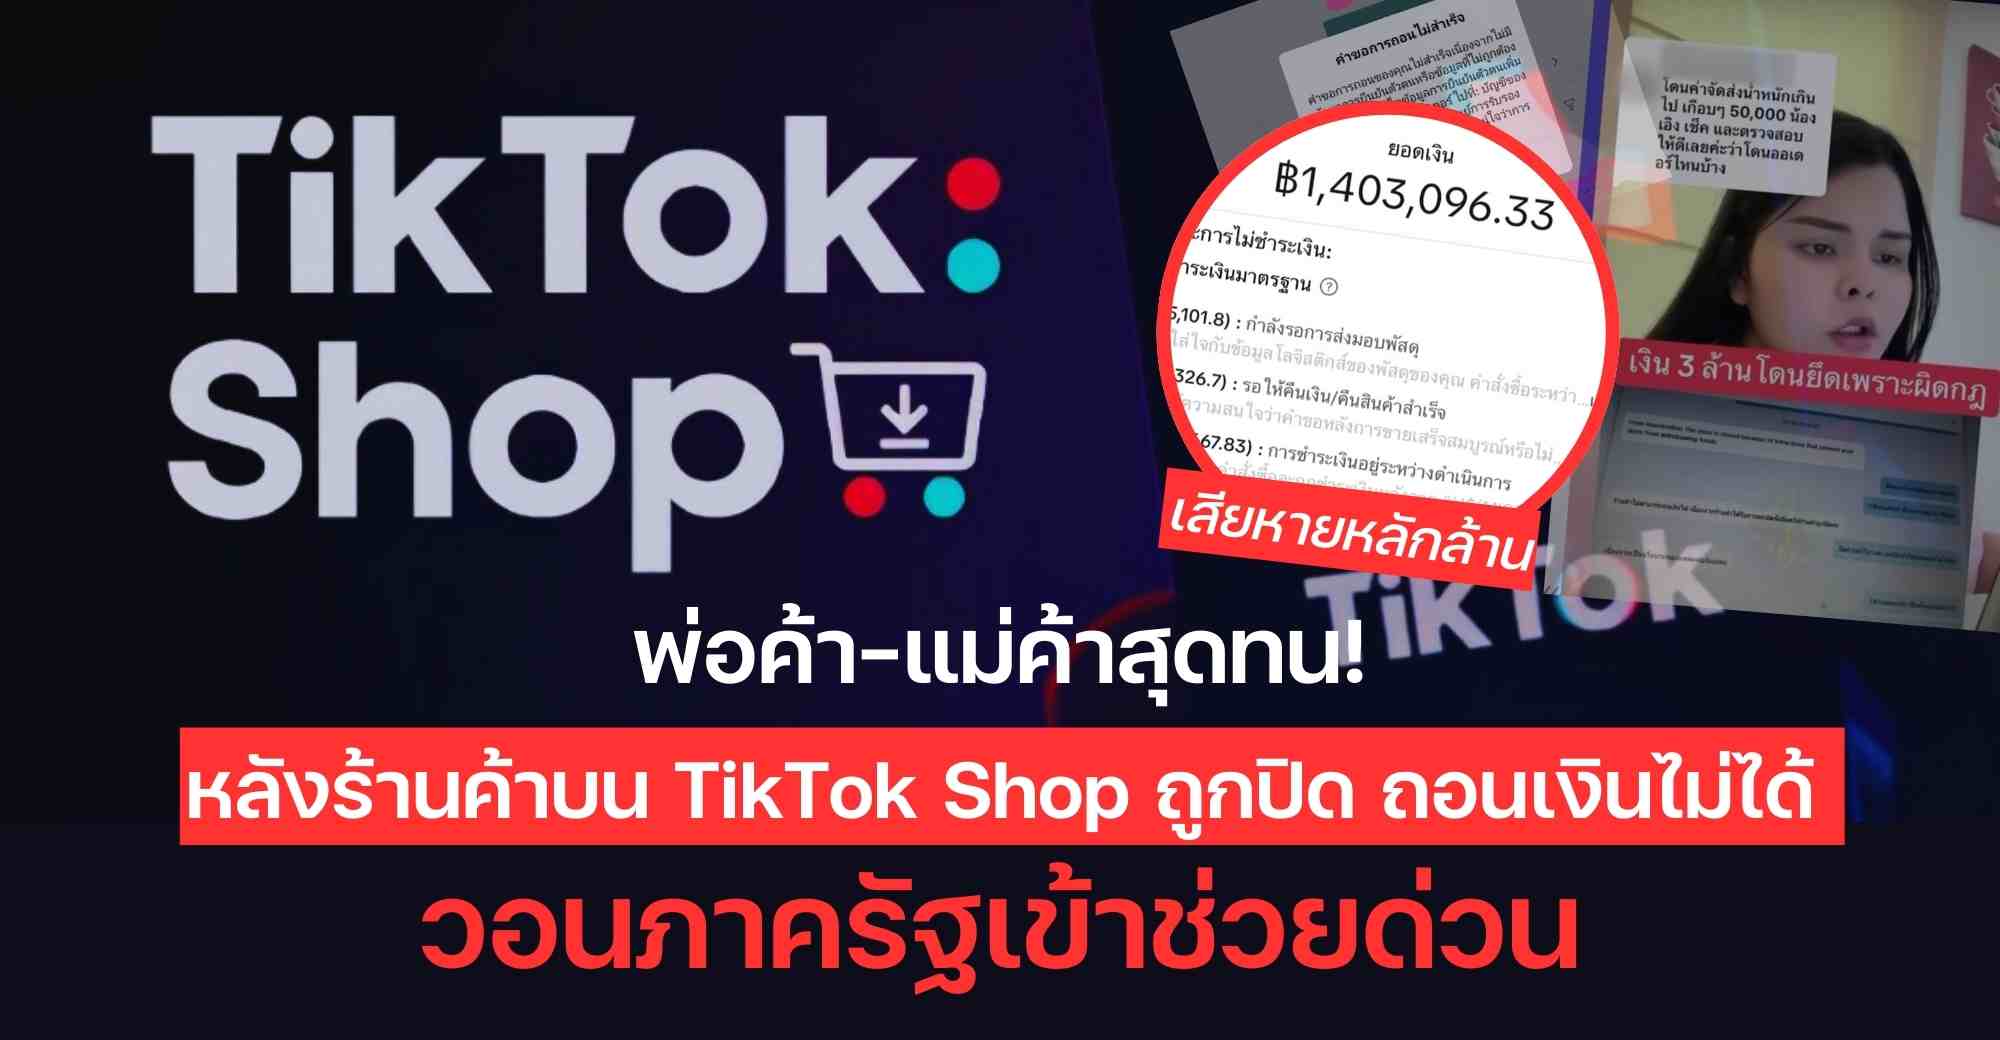 ข่าวเศรษฐกิจ, การเงิน - พ่อค้า-แม่ค้าสุดทน! หลังร้านค้าบน TikTok Shop ถูกปิด ถอนเงินไม่ได้ วอนภาครัฐเข้าช่วยด่วน